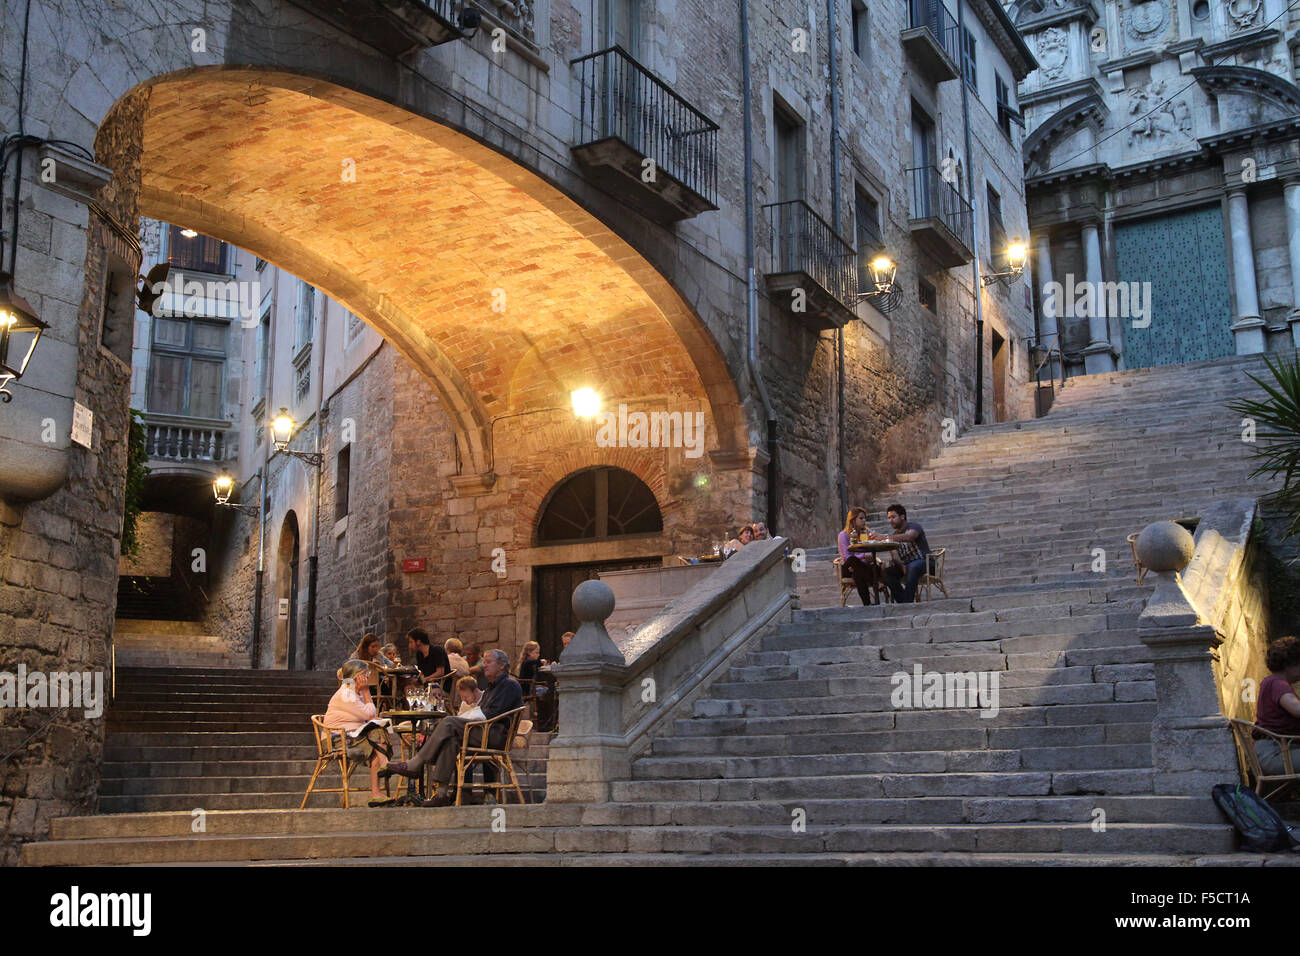 Die romantischen Stufen von Sant Martí Girona Katalonien Spanien.Cafè Le Bistrot und die Stufen von Sant Martí als der romantischste Ort in Spanien Stockfoto